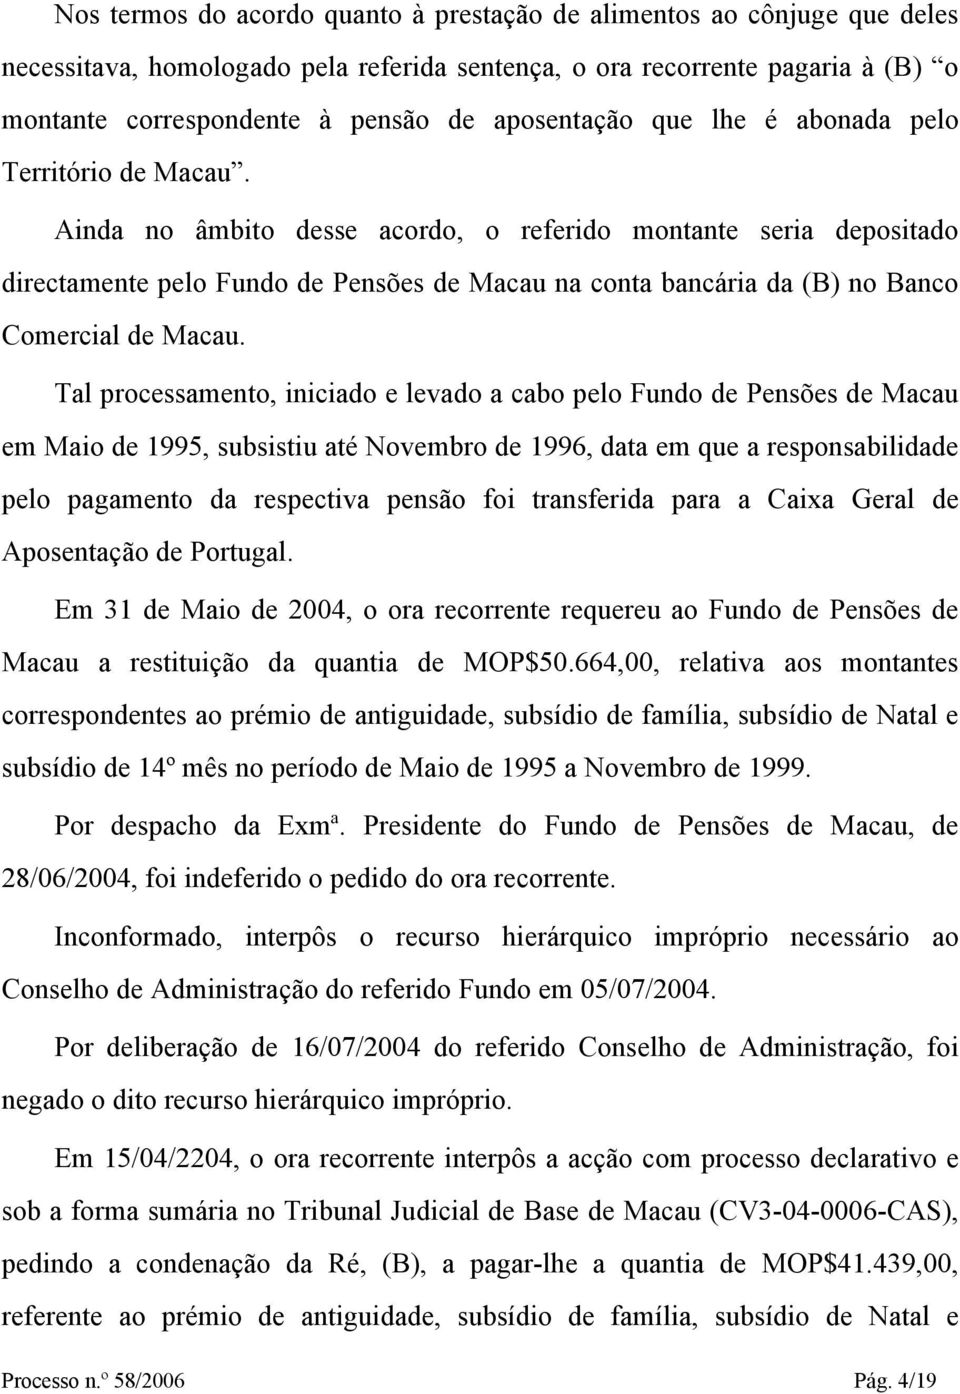 Ainda no âmbito desse acordo, o referido montante seria depositado directamente pelo Fundo de Pensões de Macau na conta bancária da (B) no Banco Comercial de Macau.